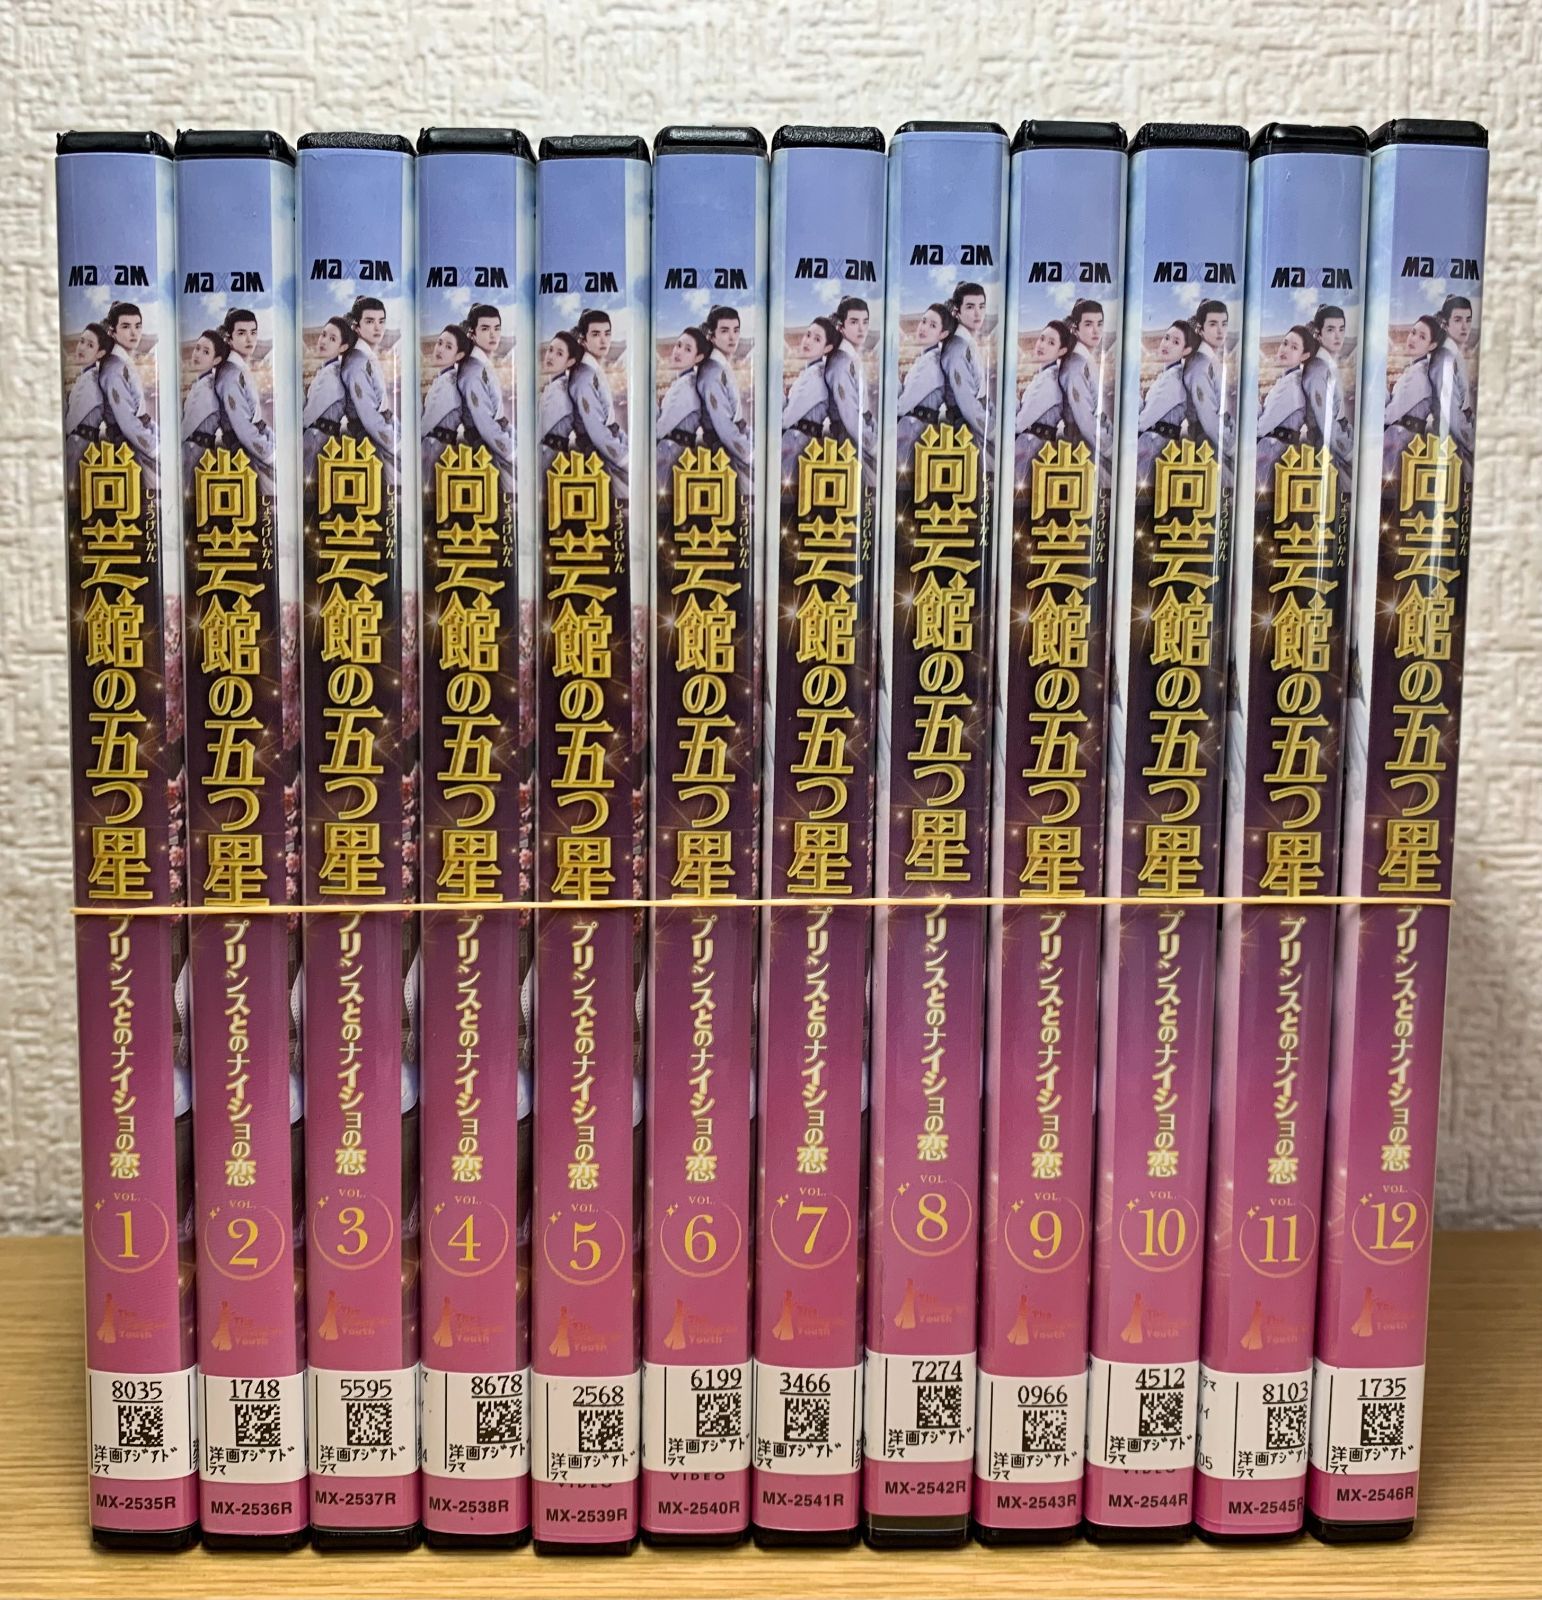 尚芸館の五つ星 プリンスとのナイショの恋 DVD全巻セット - メルカリ